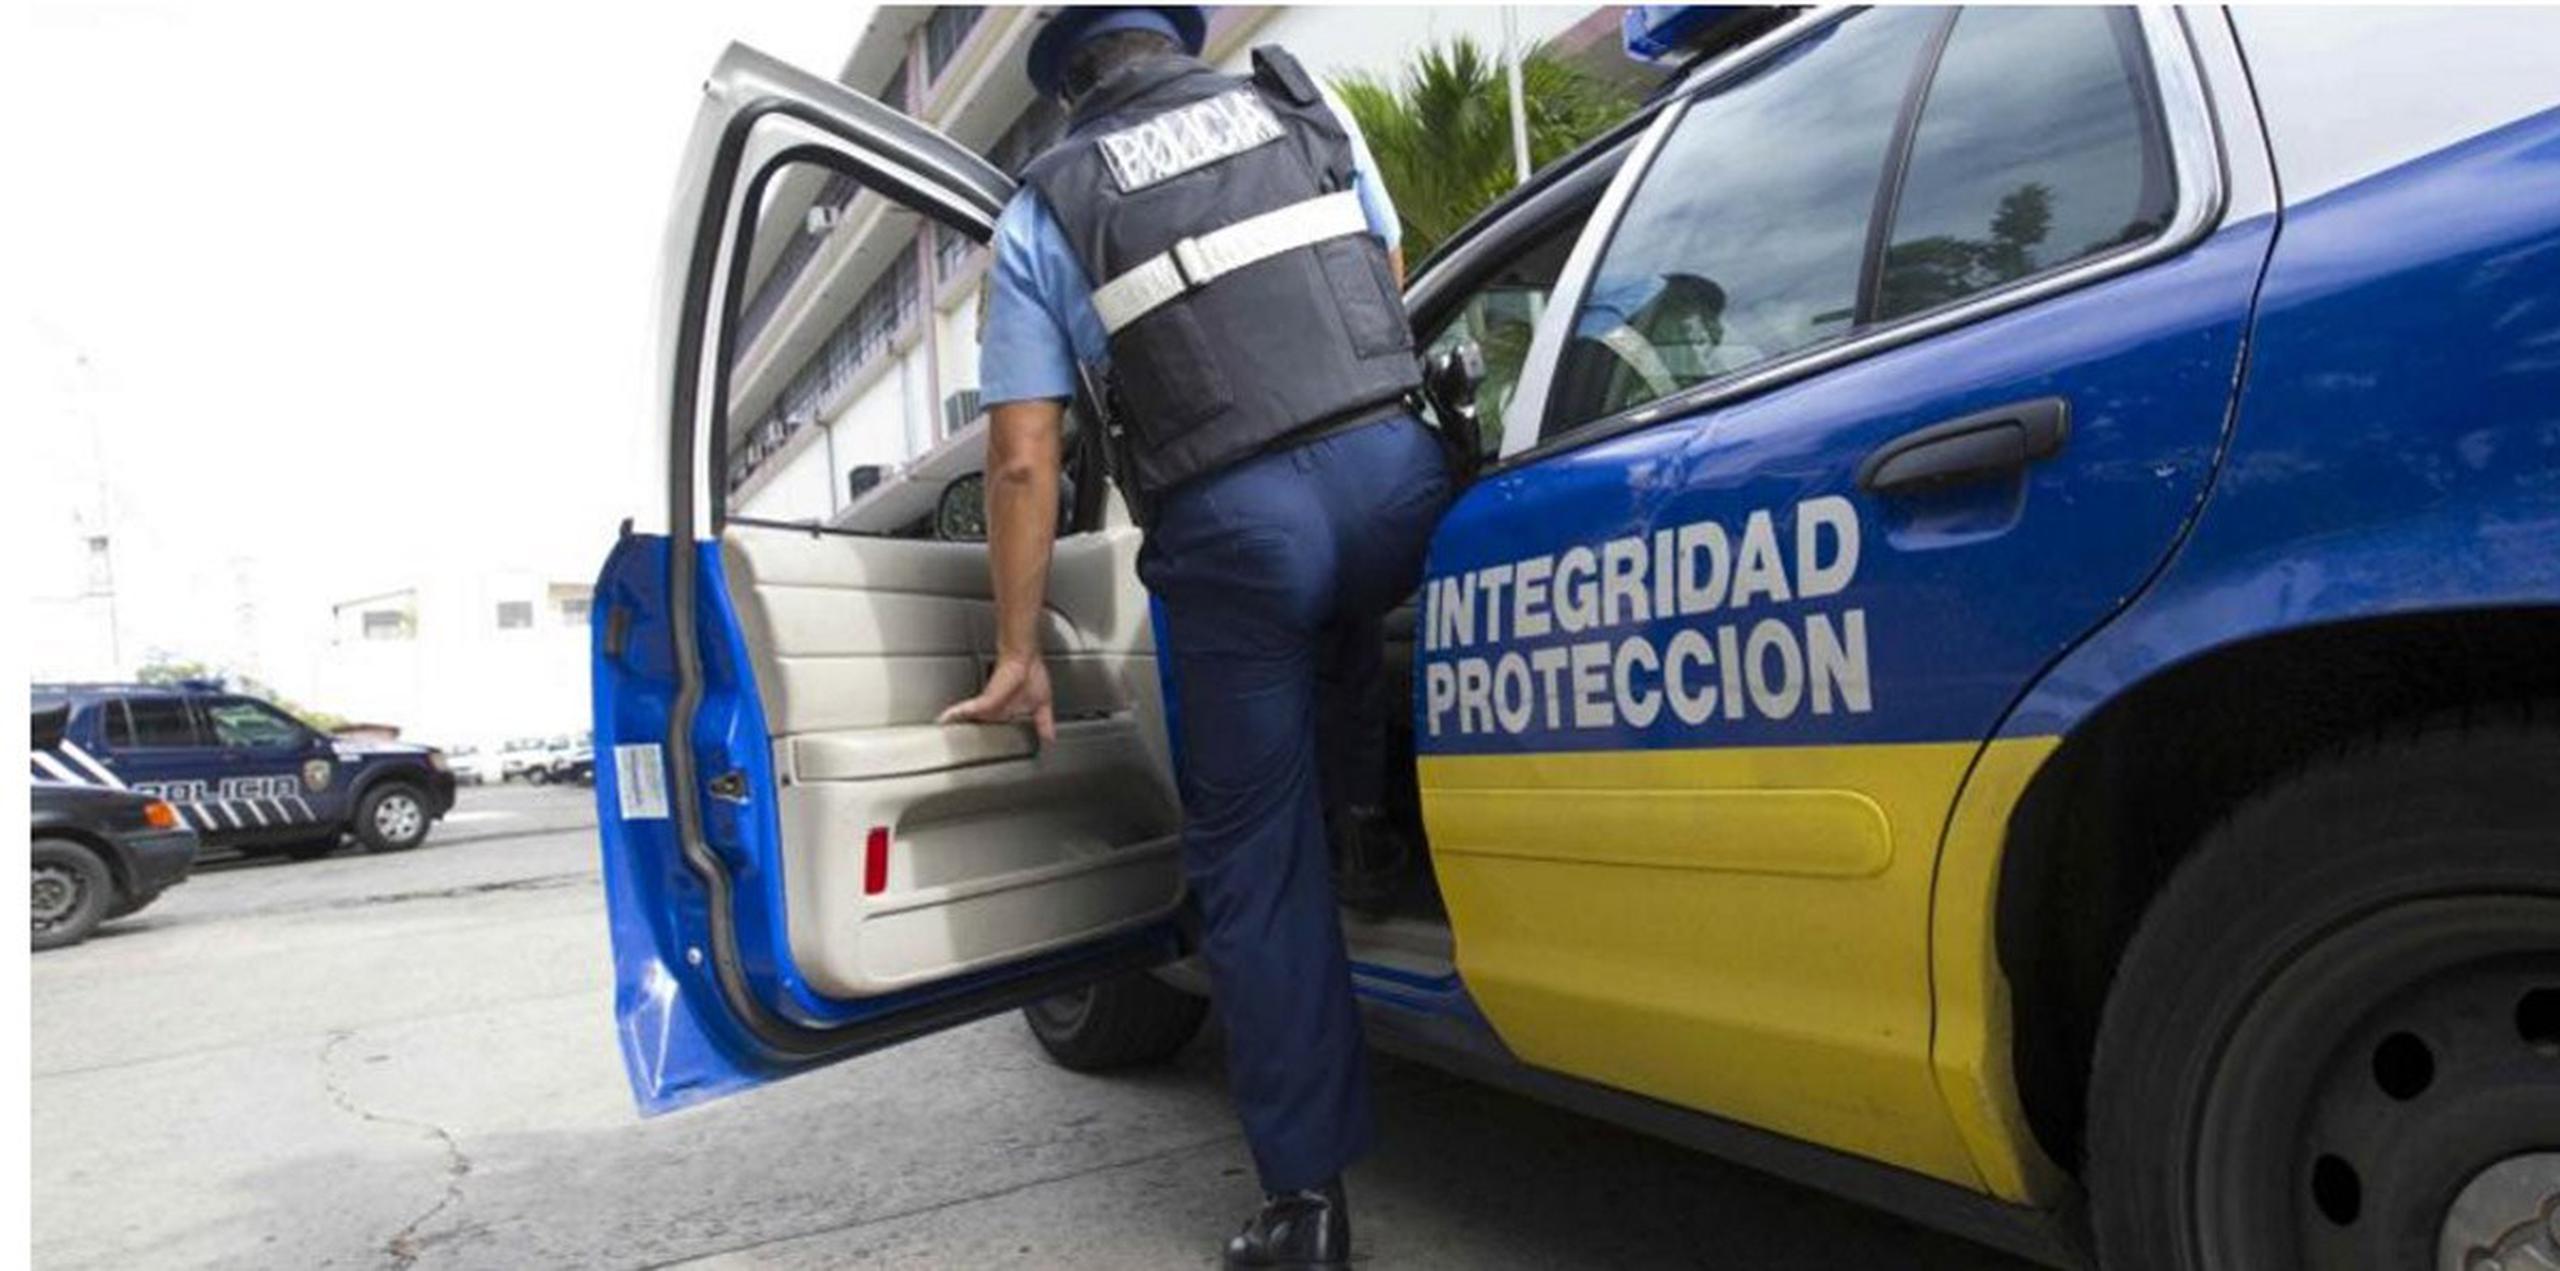 Policía investiga tres robos reportados en las últimas horas en Hatillo y Río Grande. (Archivo GFR Media)